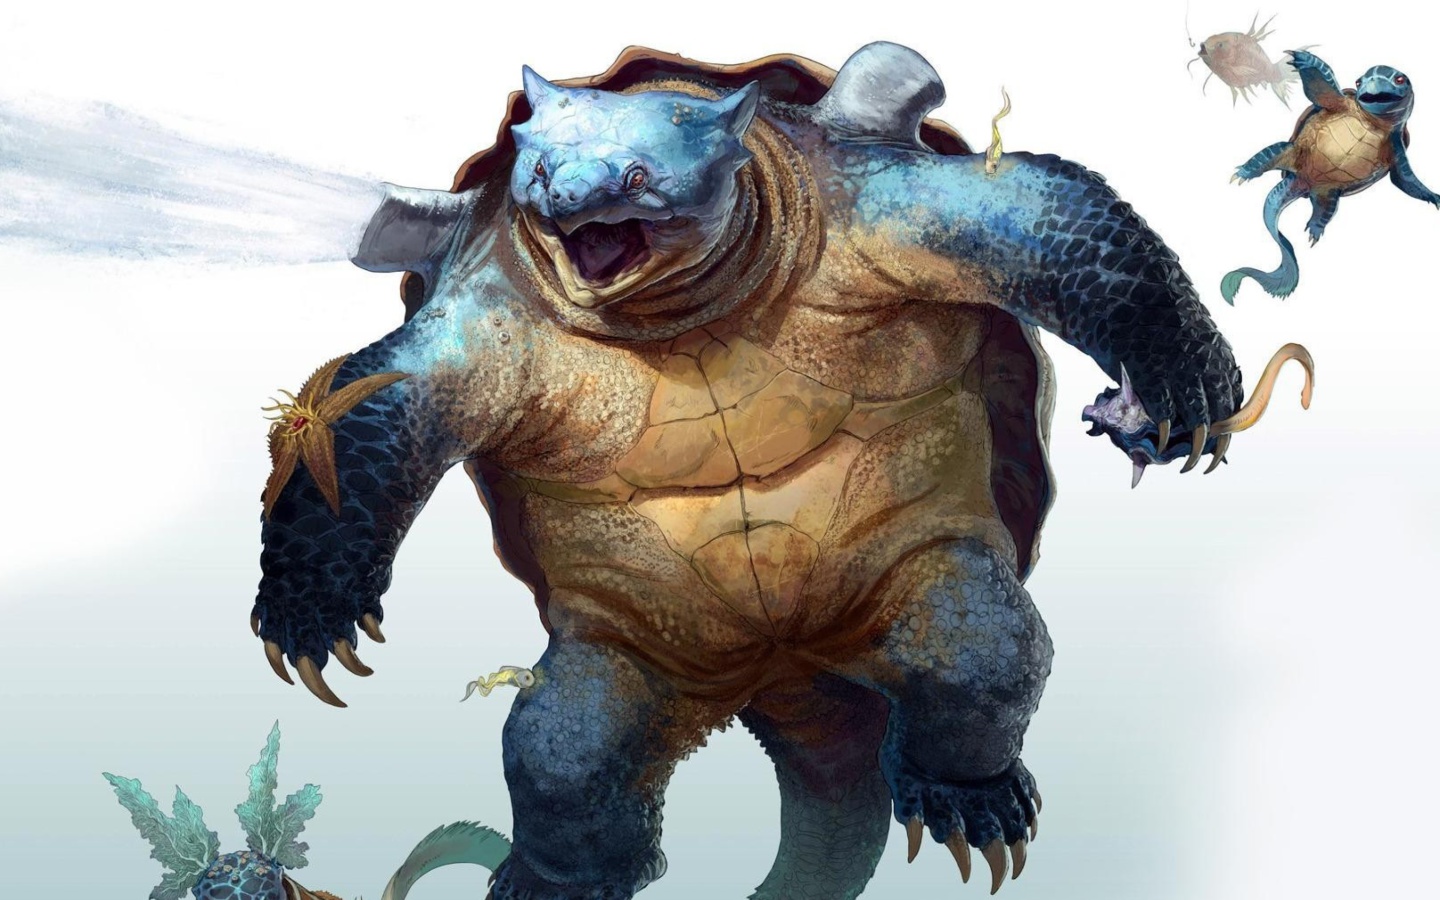 Monster Turtle wallpaper 1440x900